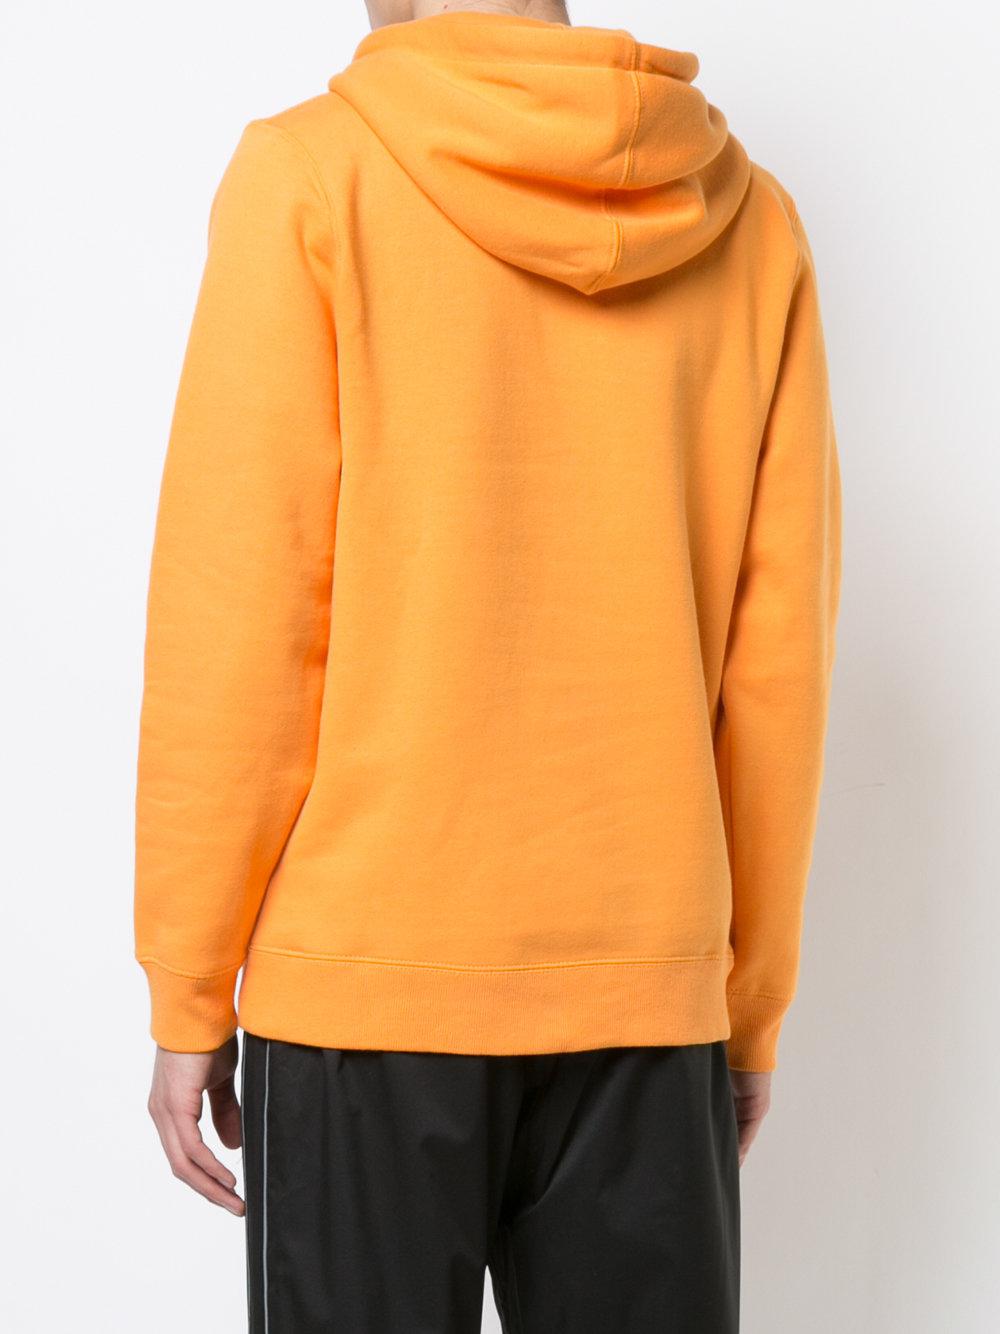 Lyst - Stussy Long Sleeved Hoodie in Orange for Men